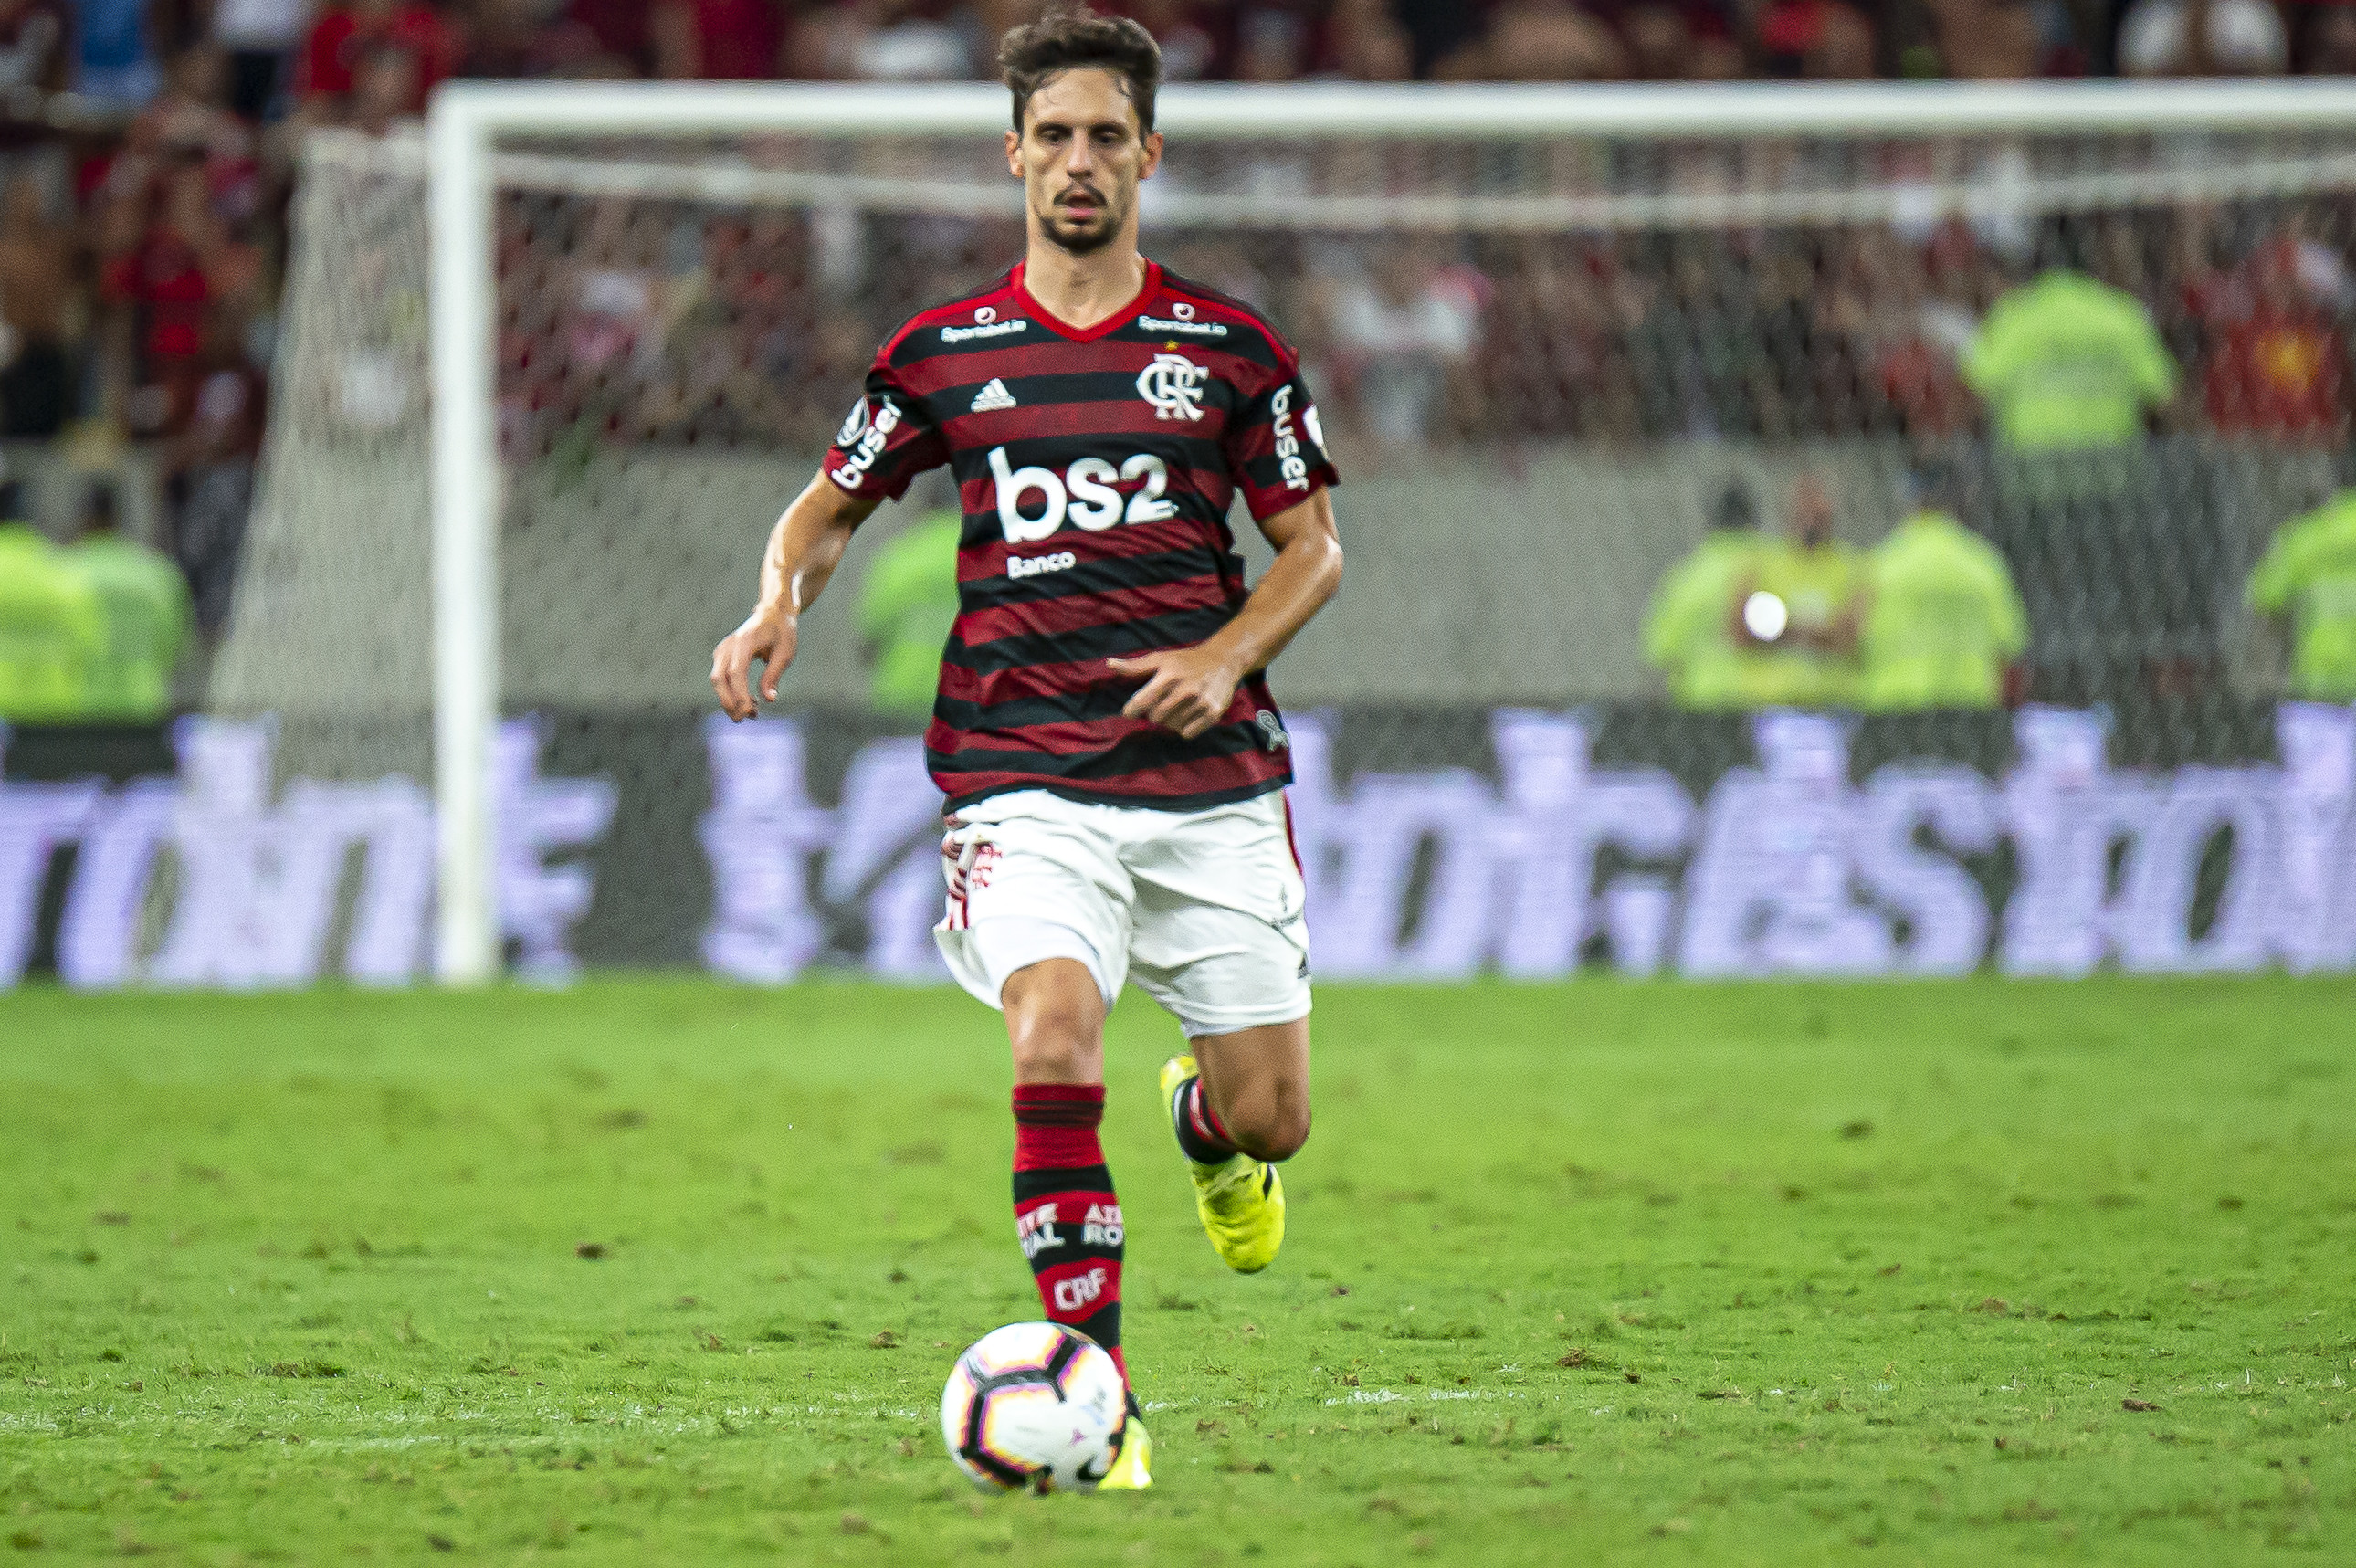 Rodrigo Caio (zagueiro): após saída conturbada do São Paulo, Rodrigo chegou ao Flamengo e se firmou como um dos melhores zagueiros do país, conquistando a Libertadores em 2019 e sendo bicampeão brasileiro em 2019 e 2020.